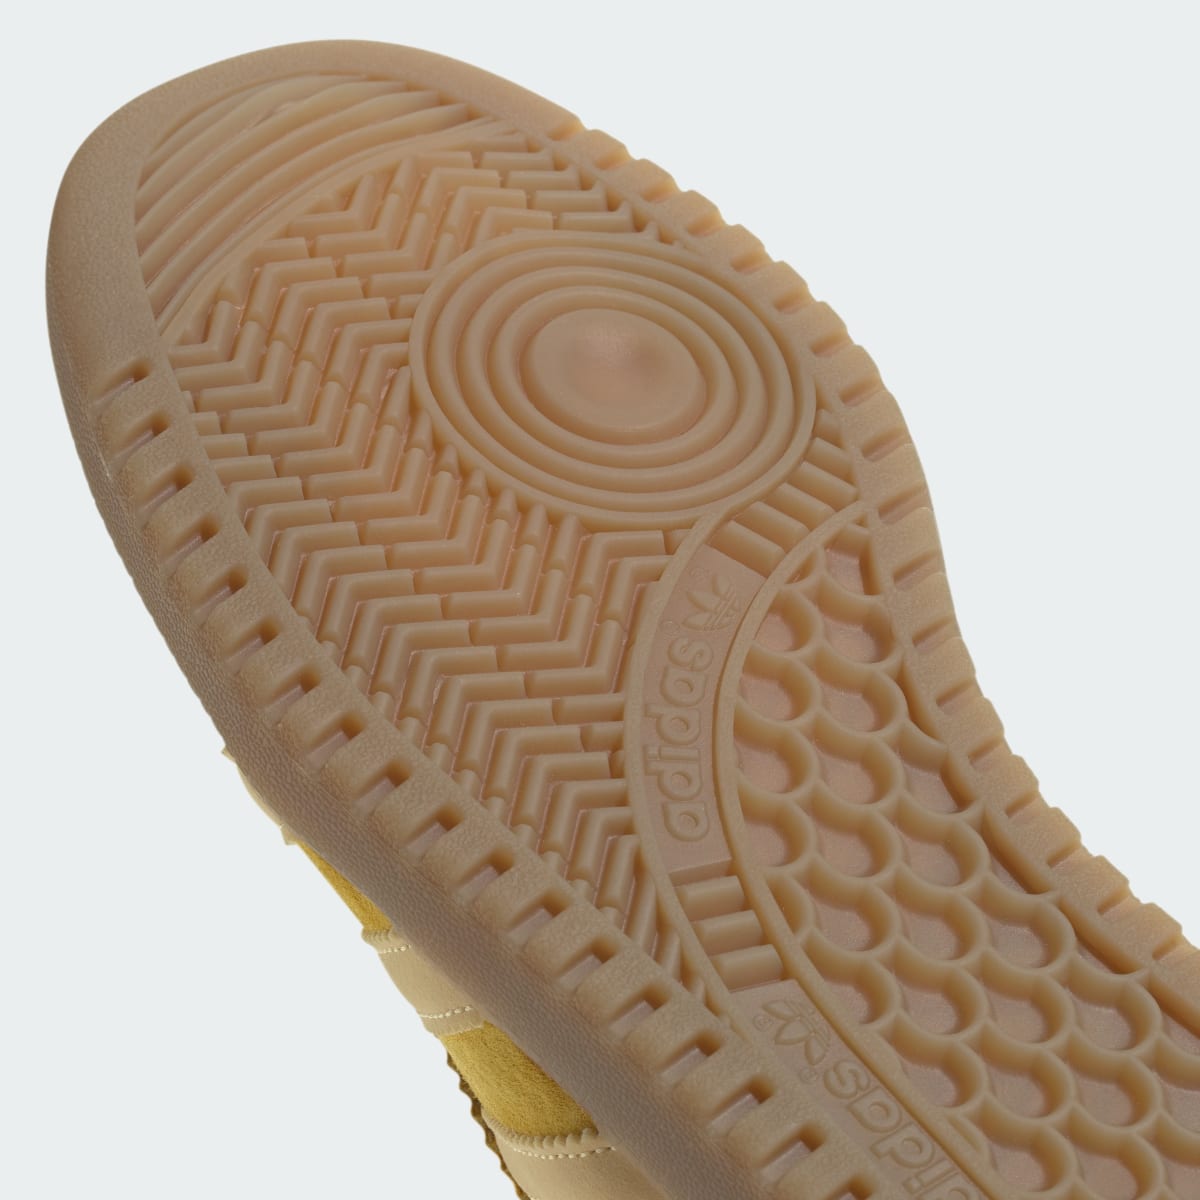 Adidas Bermuda Schuh. 4